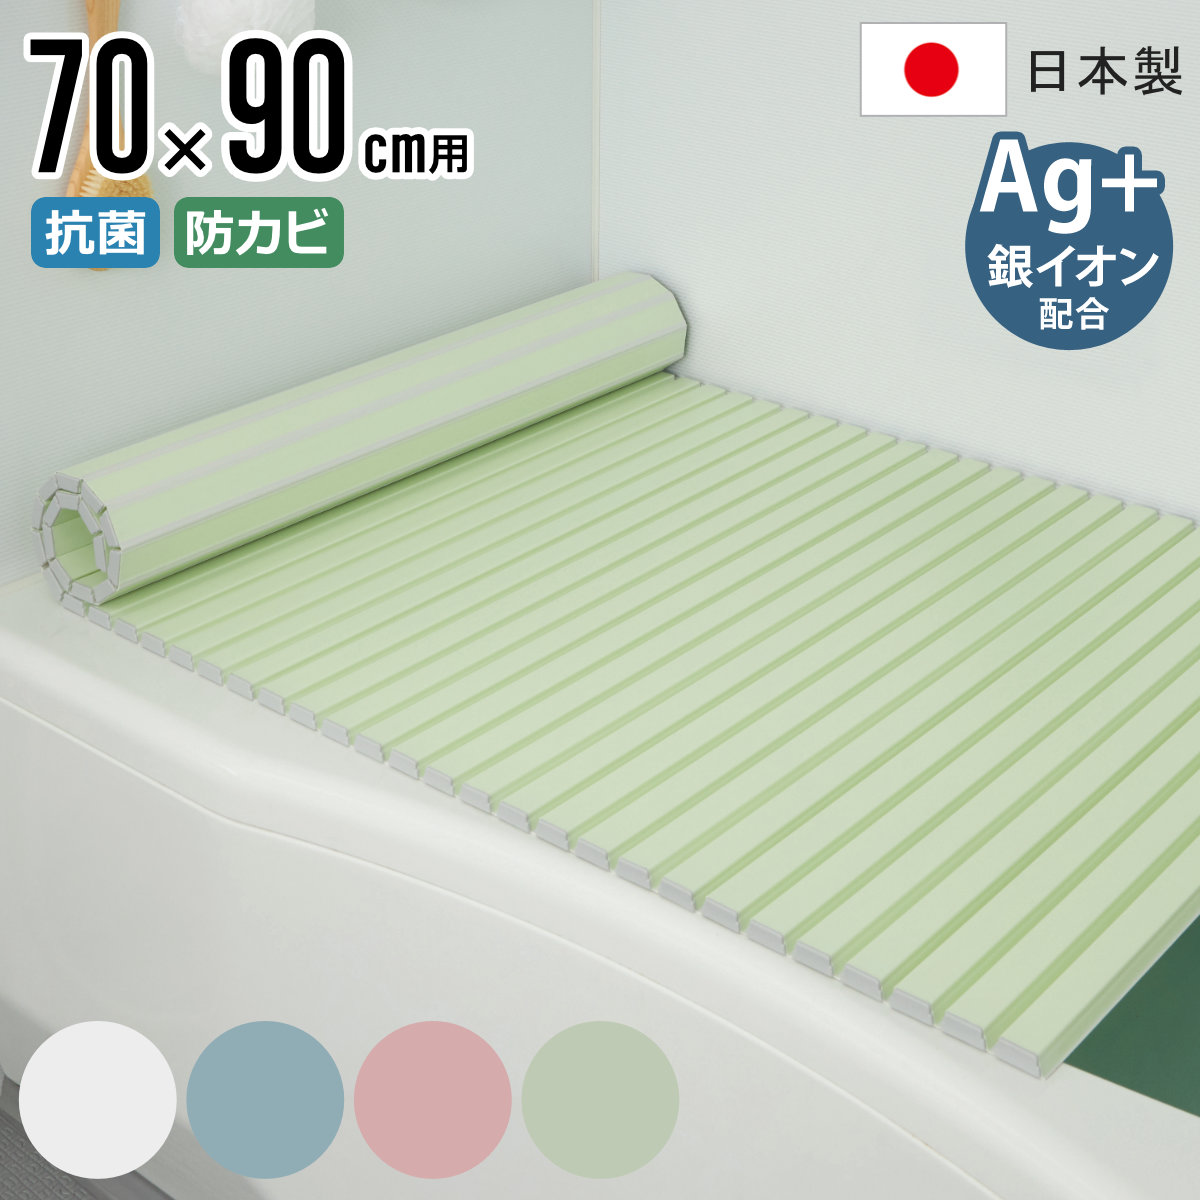 風呂ふた シャッター Ag抗菌 日本製 70×90cm 用 M-9 実寸70×91.5cm